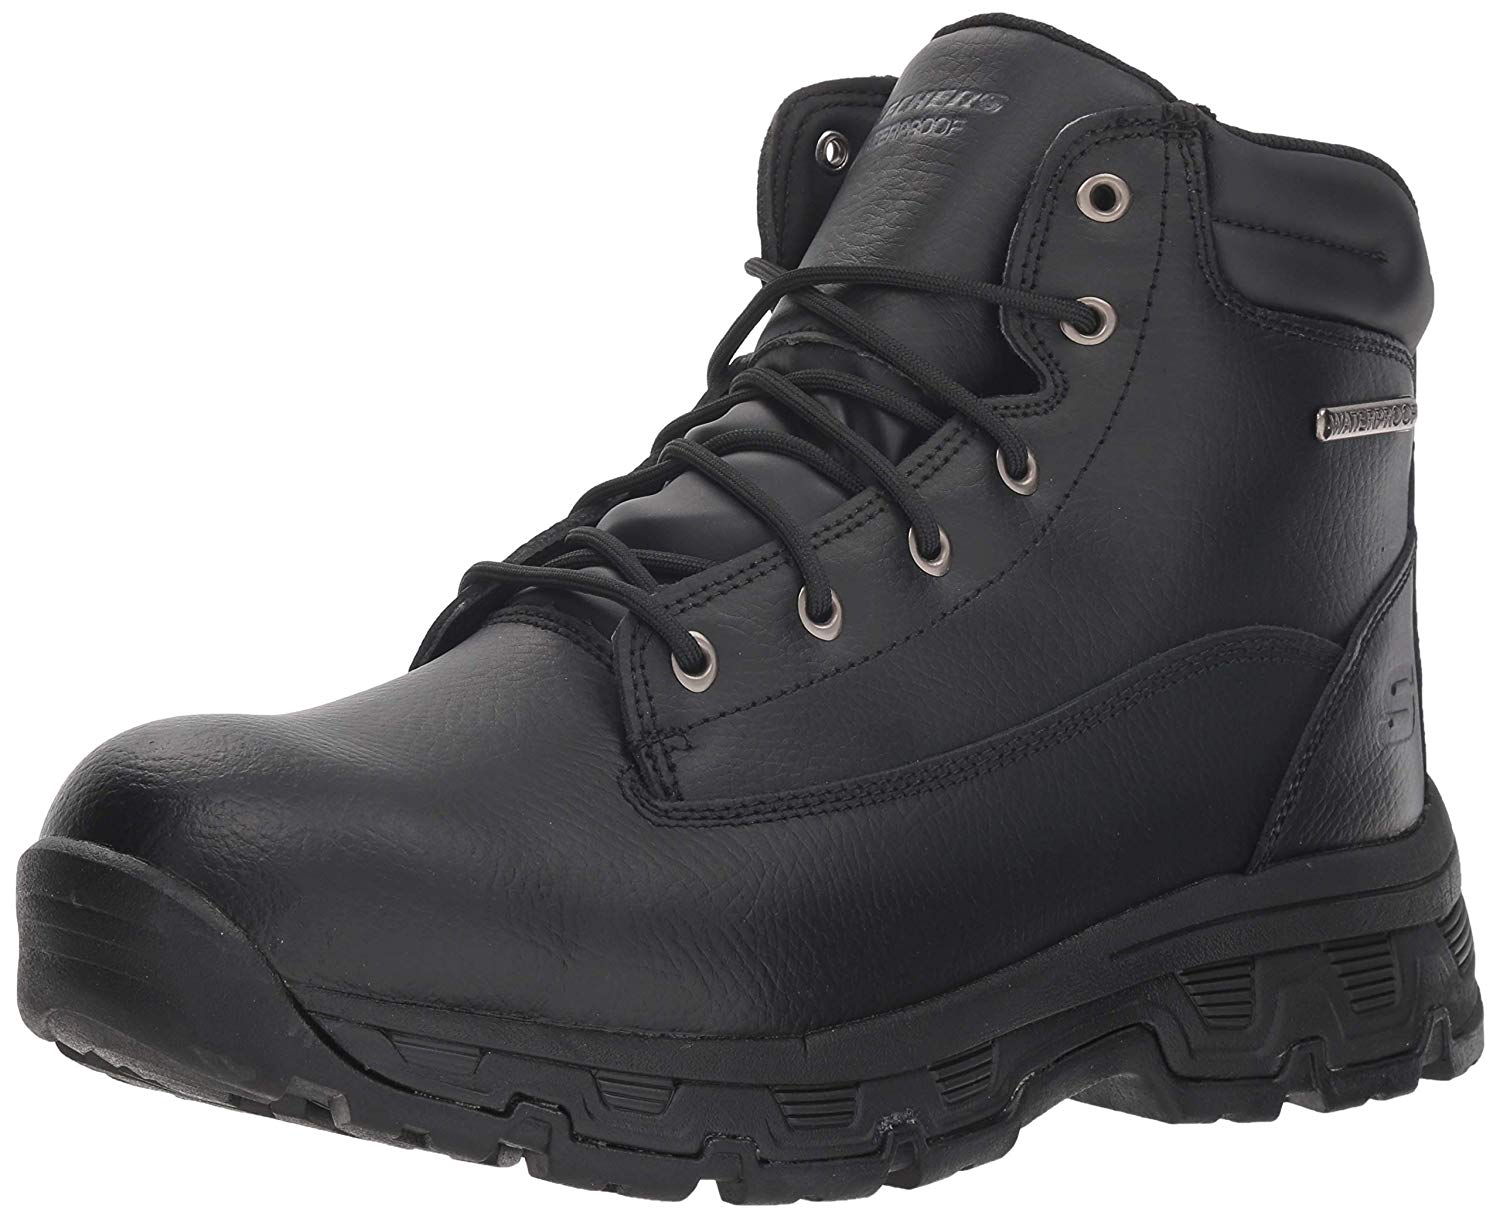 Skechers Men's Morson-Sinatro Hiking Boot, Black, Size 9.5 GXGc | eBay